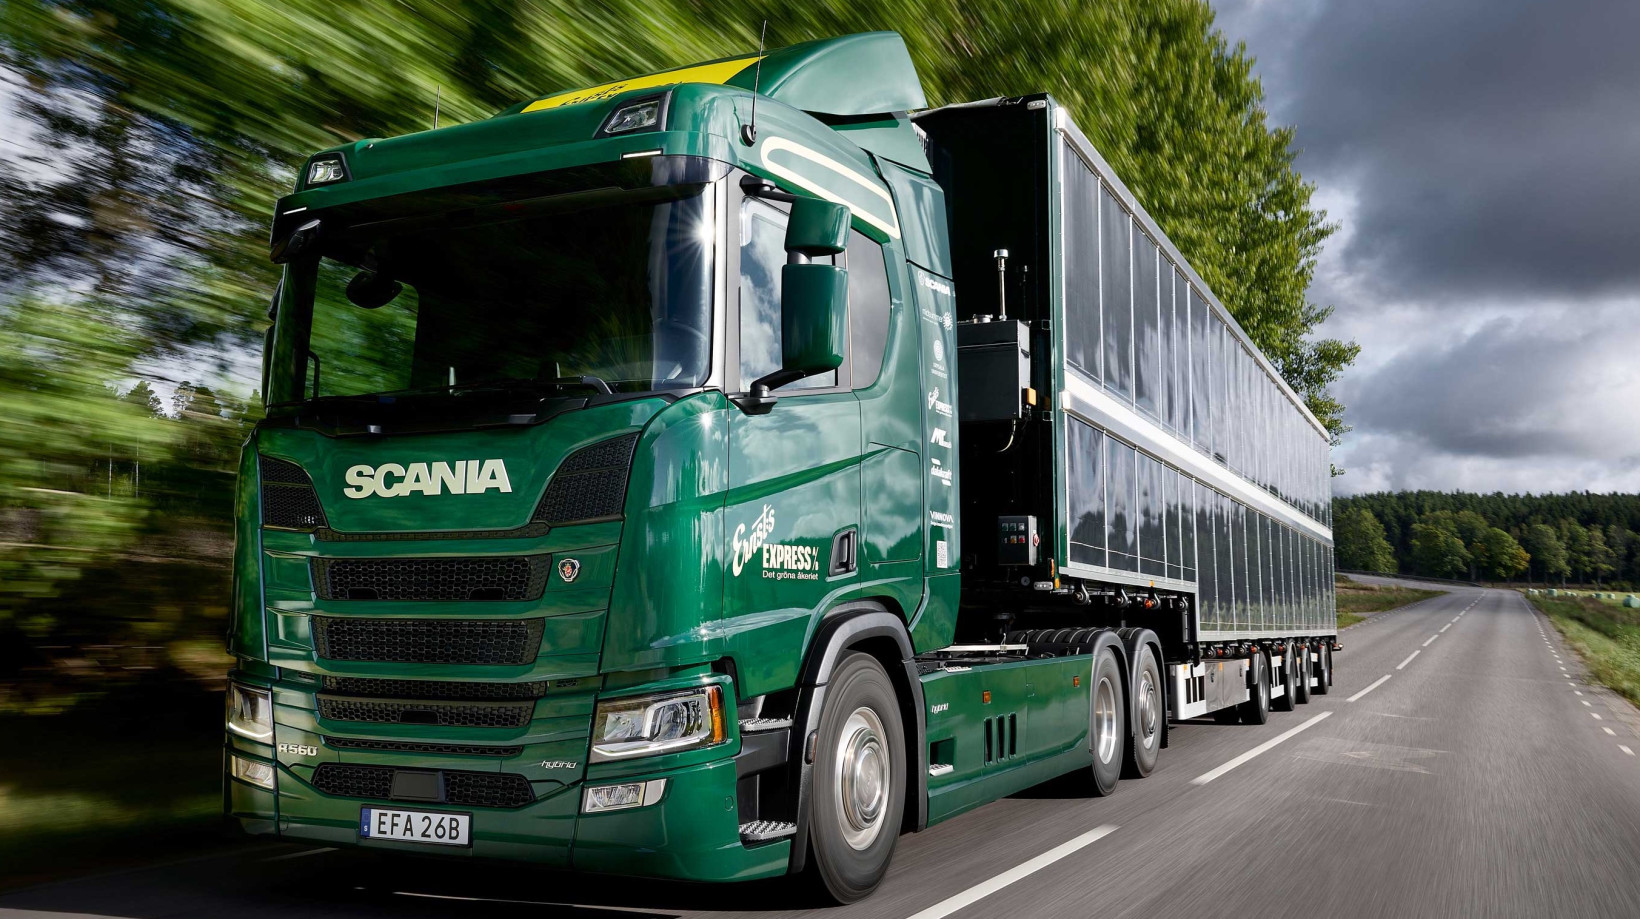 Đầu kéo năng lượng mặt trời của Scania: ý tưởng xe chạy hoài không cần dừng nạp nhiên liệu